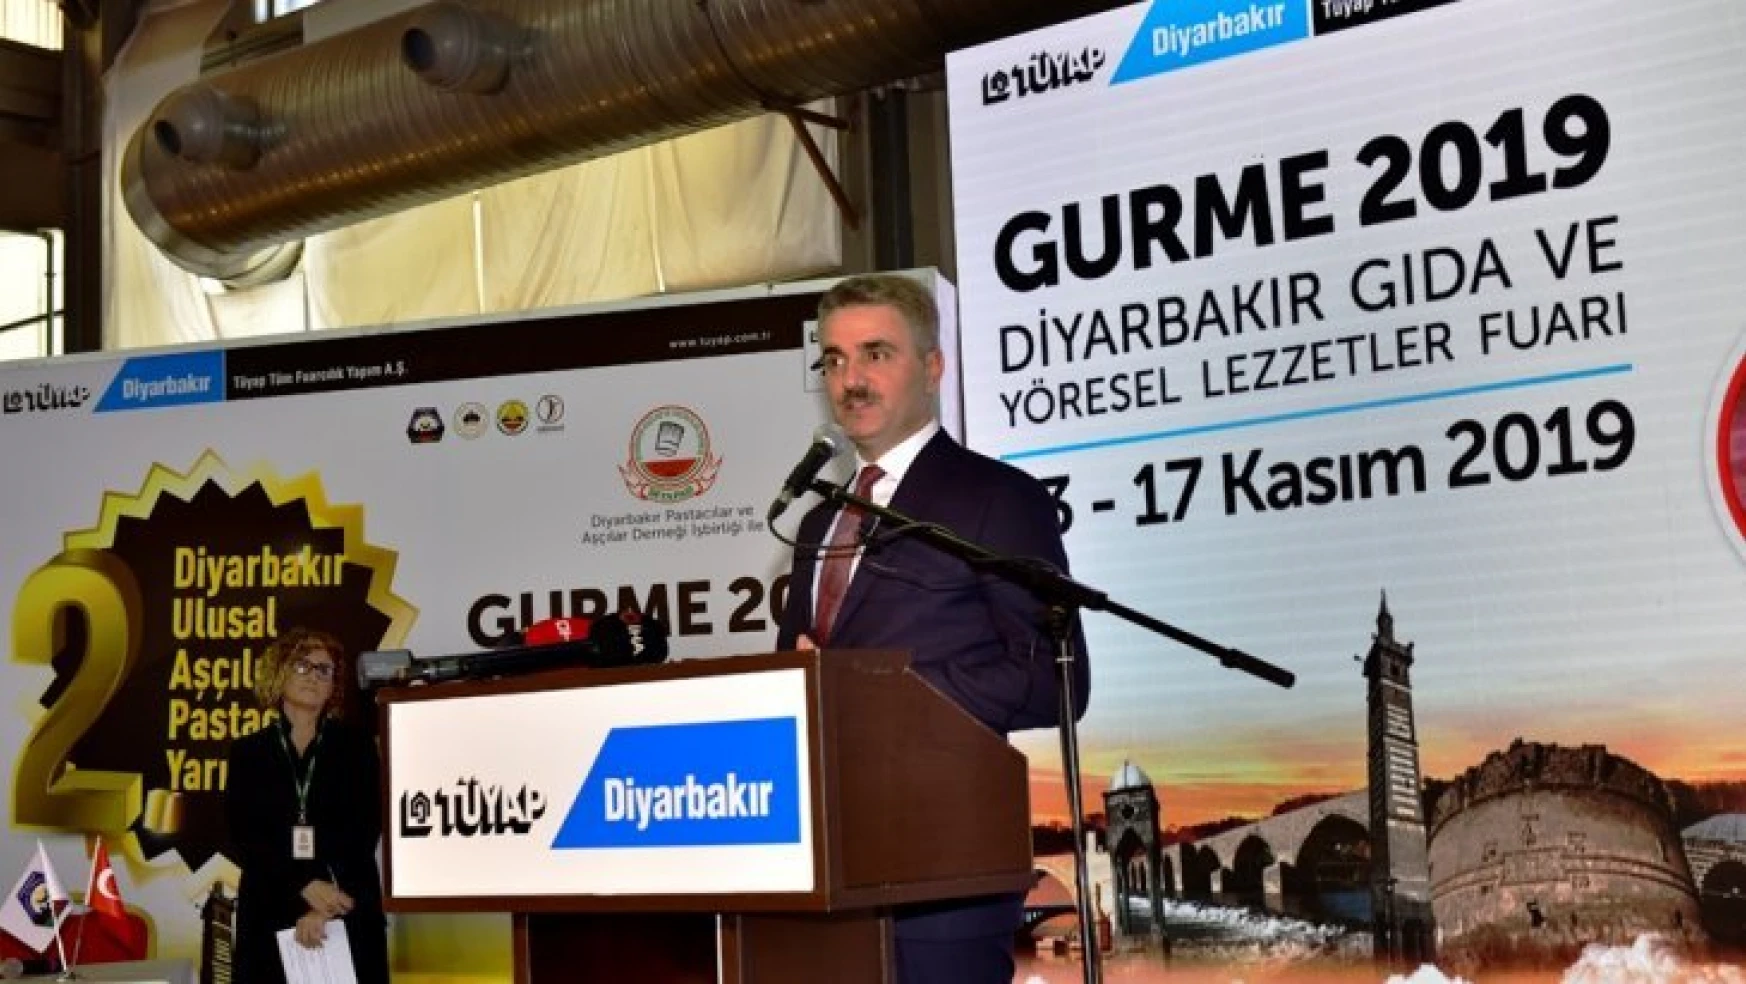 Malatya, Diyarbakır 'Gurme 2019 Gıda ve Yöresel Lezzetler Fuarının' Onur Konuğu Oldu